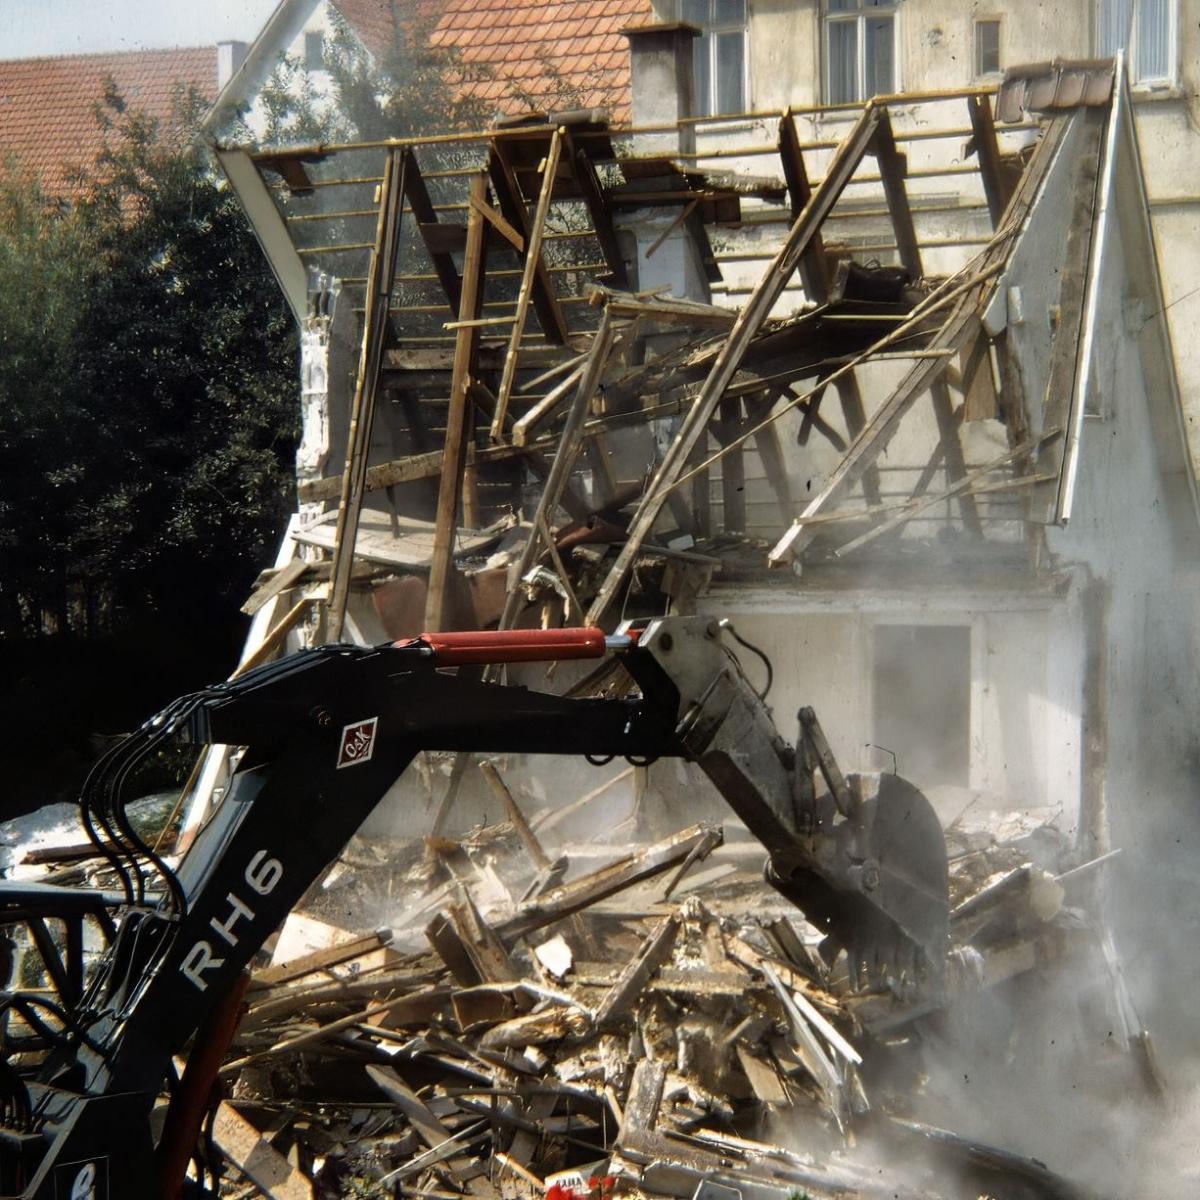 1967: Abbruch vom Haus Richard & Emilie Emilie Fauser Gemischtwaren, Hauptstr. Haus dahinter Marta Veit (Quelle: Manfred Knecht)